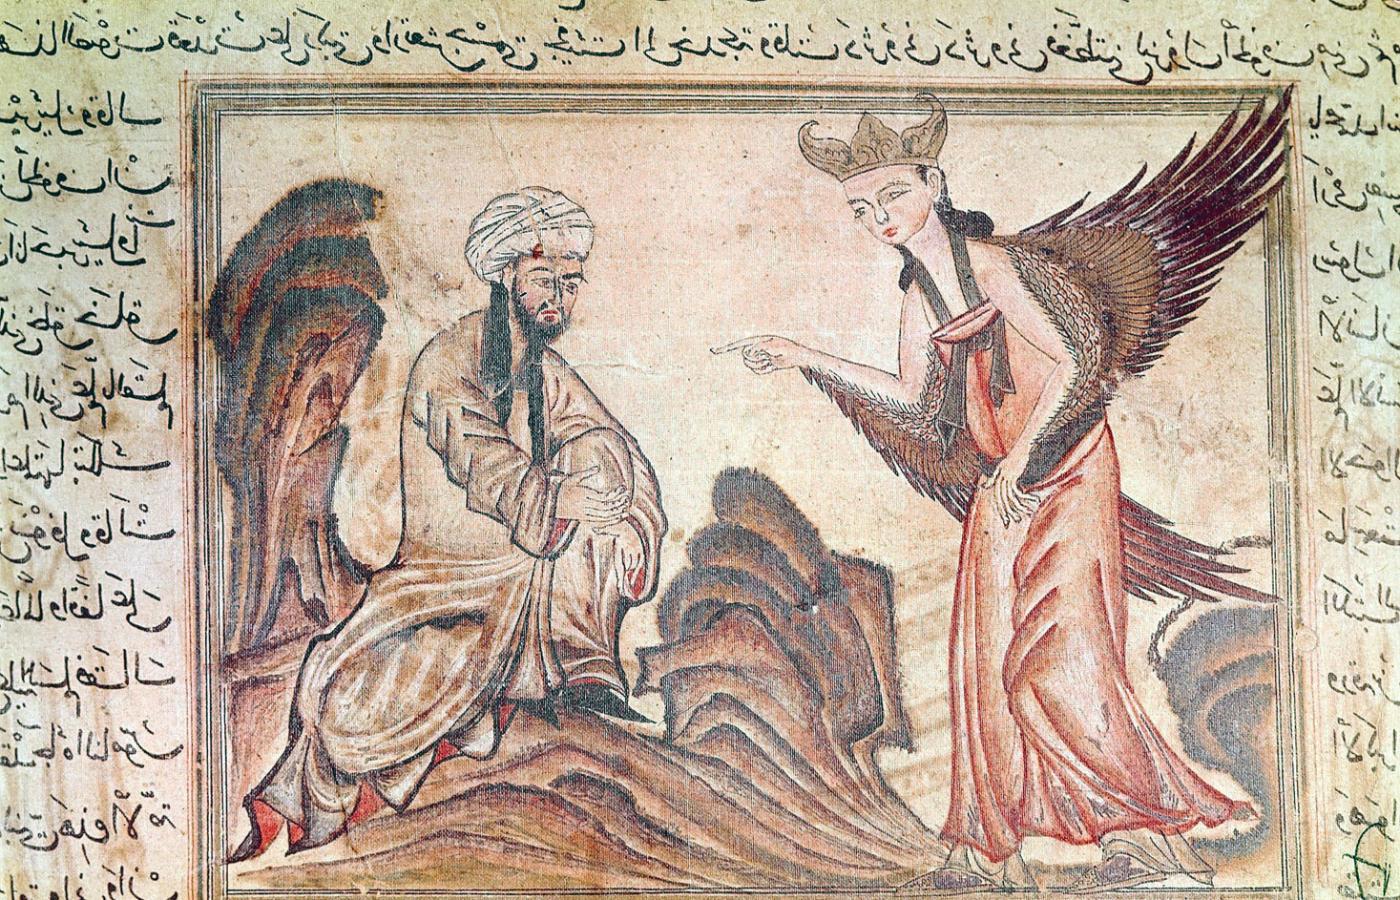 Anioł Dżibril (Gabriel) przekazuje objawienie prorokowi Mahometowi. Ilustracja z perskiej kroniki z początku XIV w.